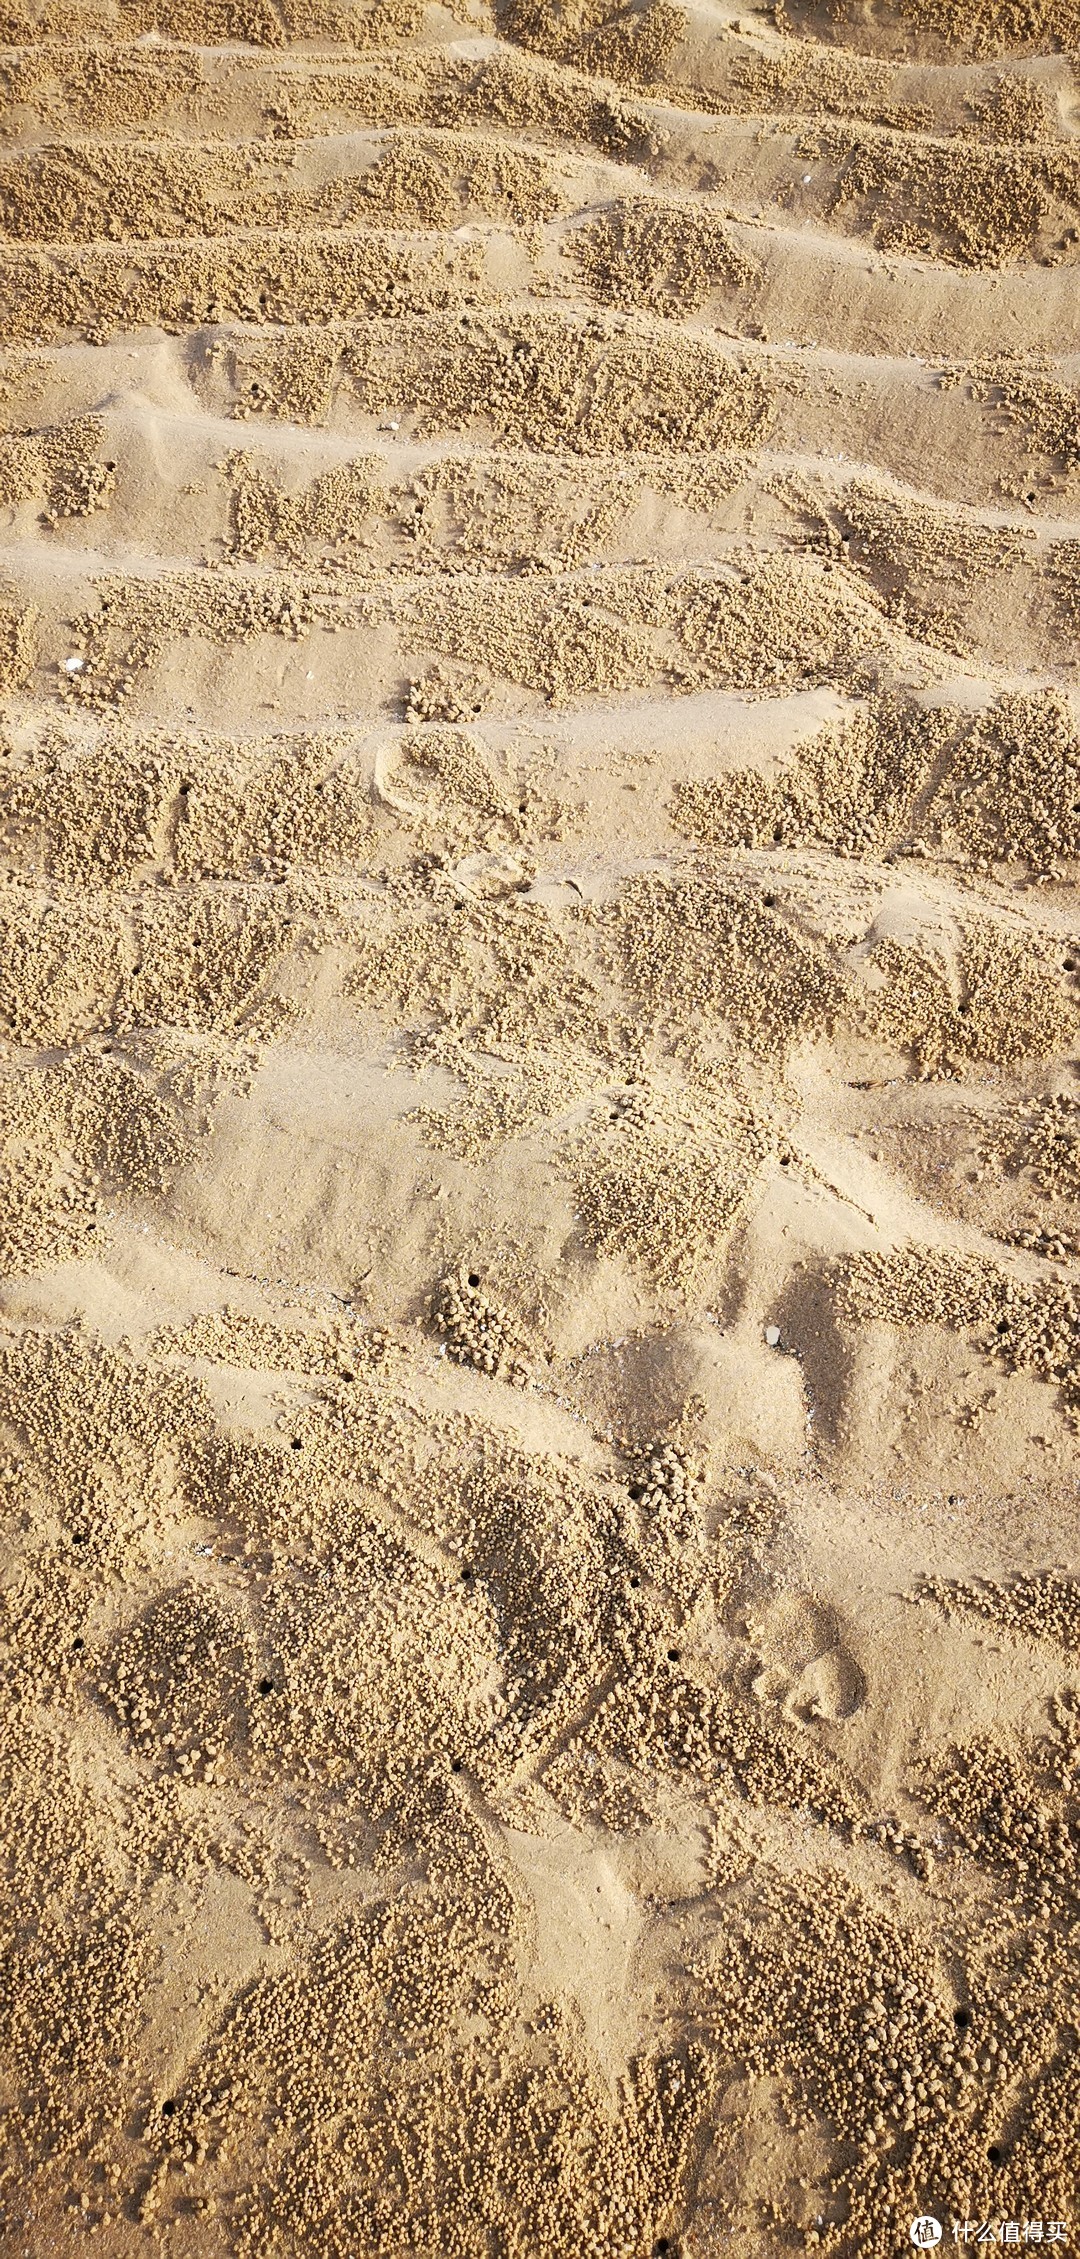 沙滩上的小螃蟹挖的洞